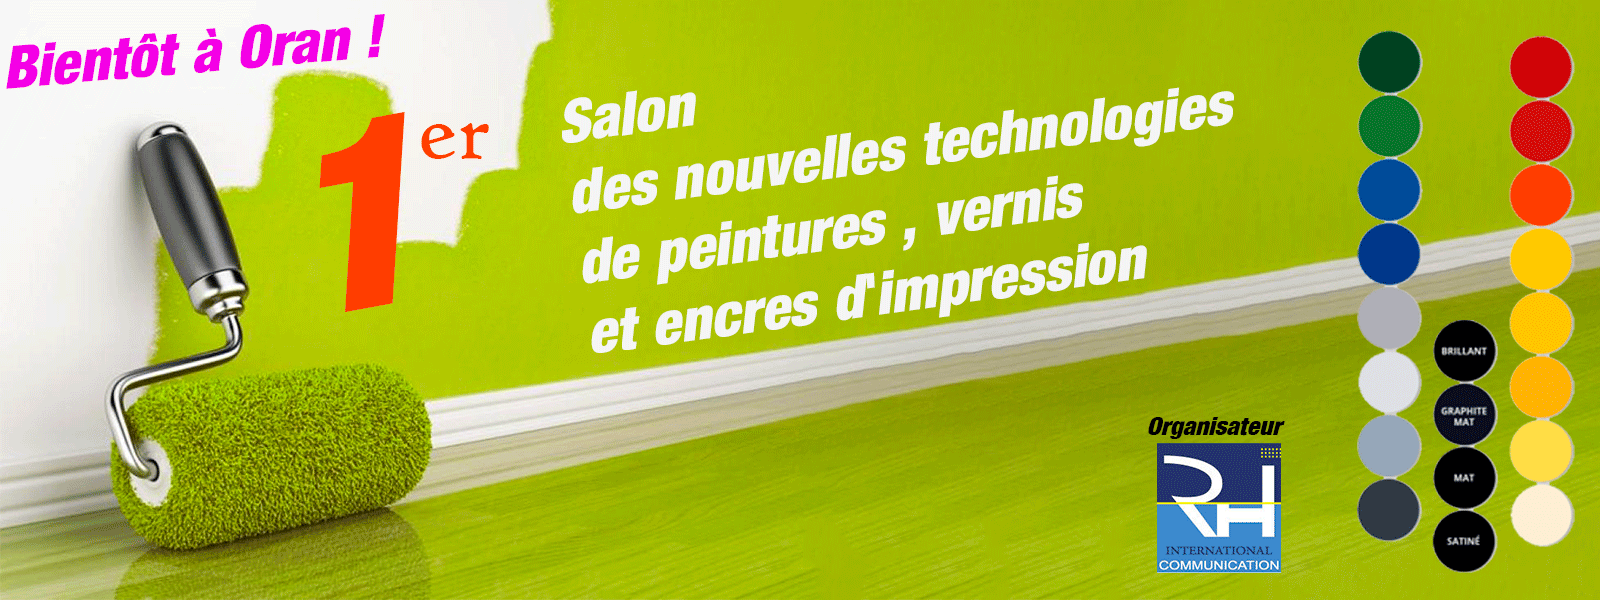 Salon International des Nouvelles Technologies de Pentures, Vernis et Encres d’Impression